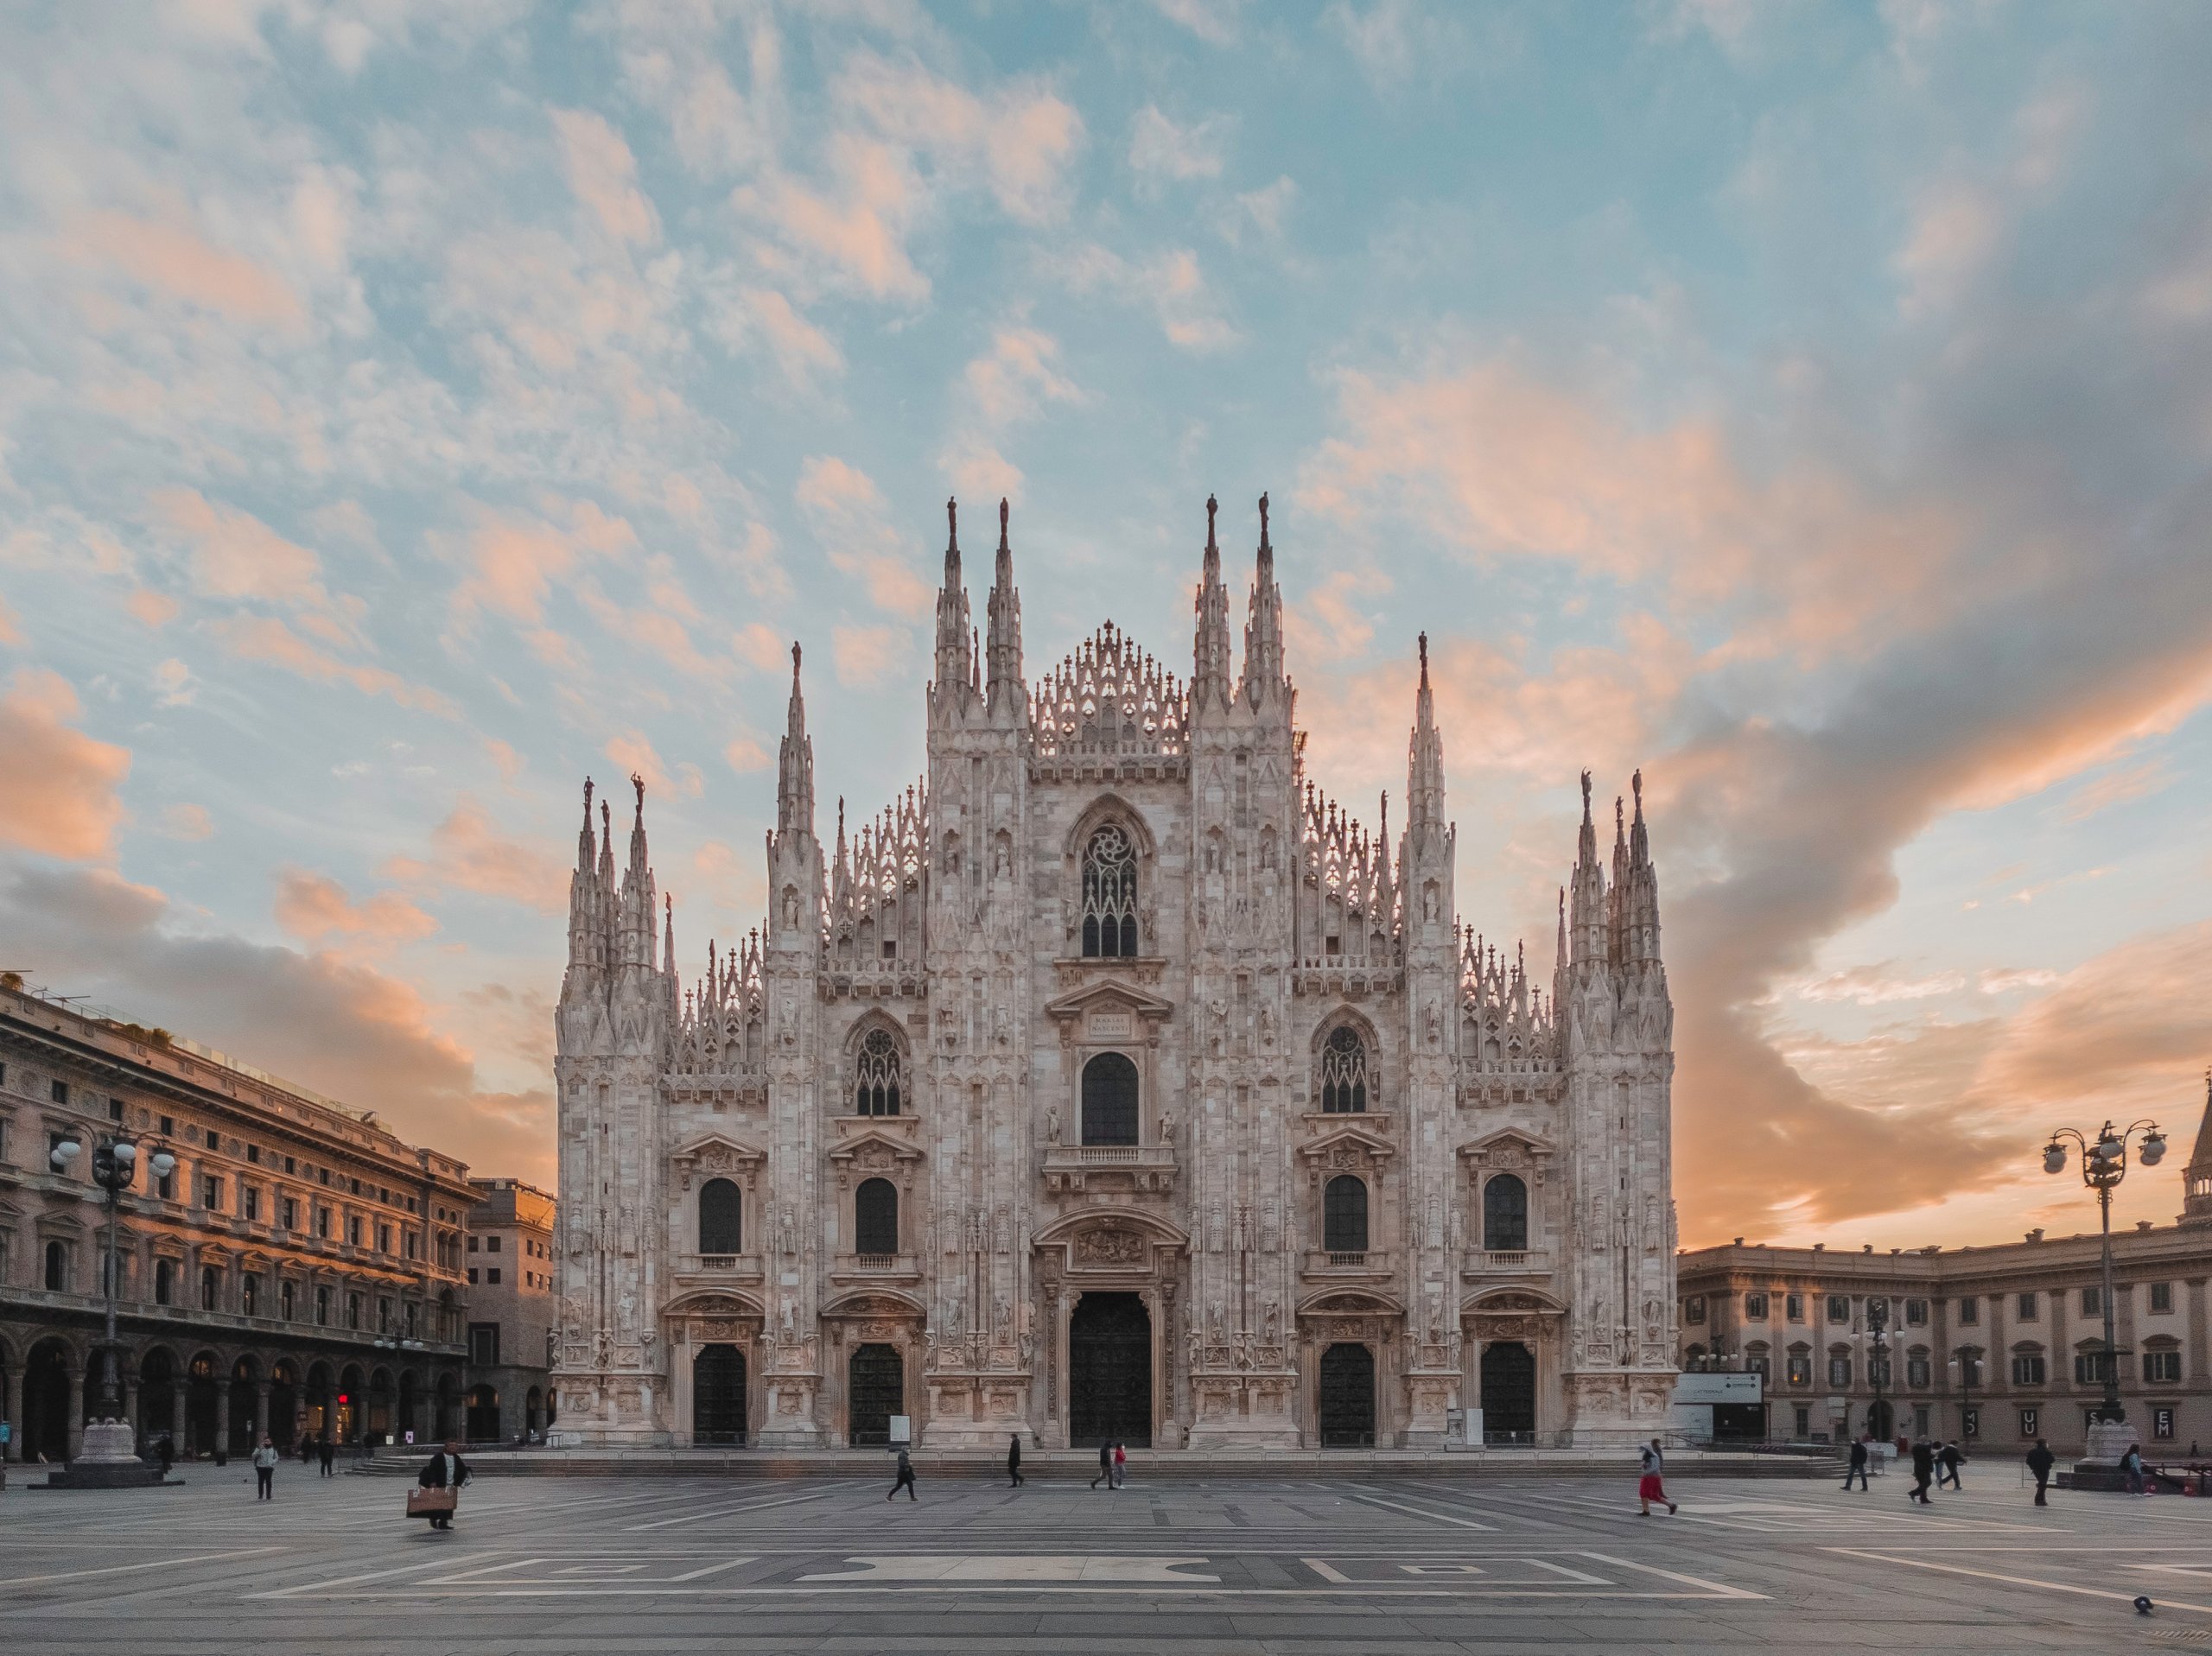 Architekturreise in die Metropole der Städteentwicklung nach Mailand | Weitere Infos folgen